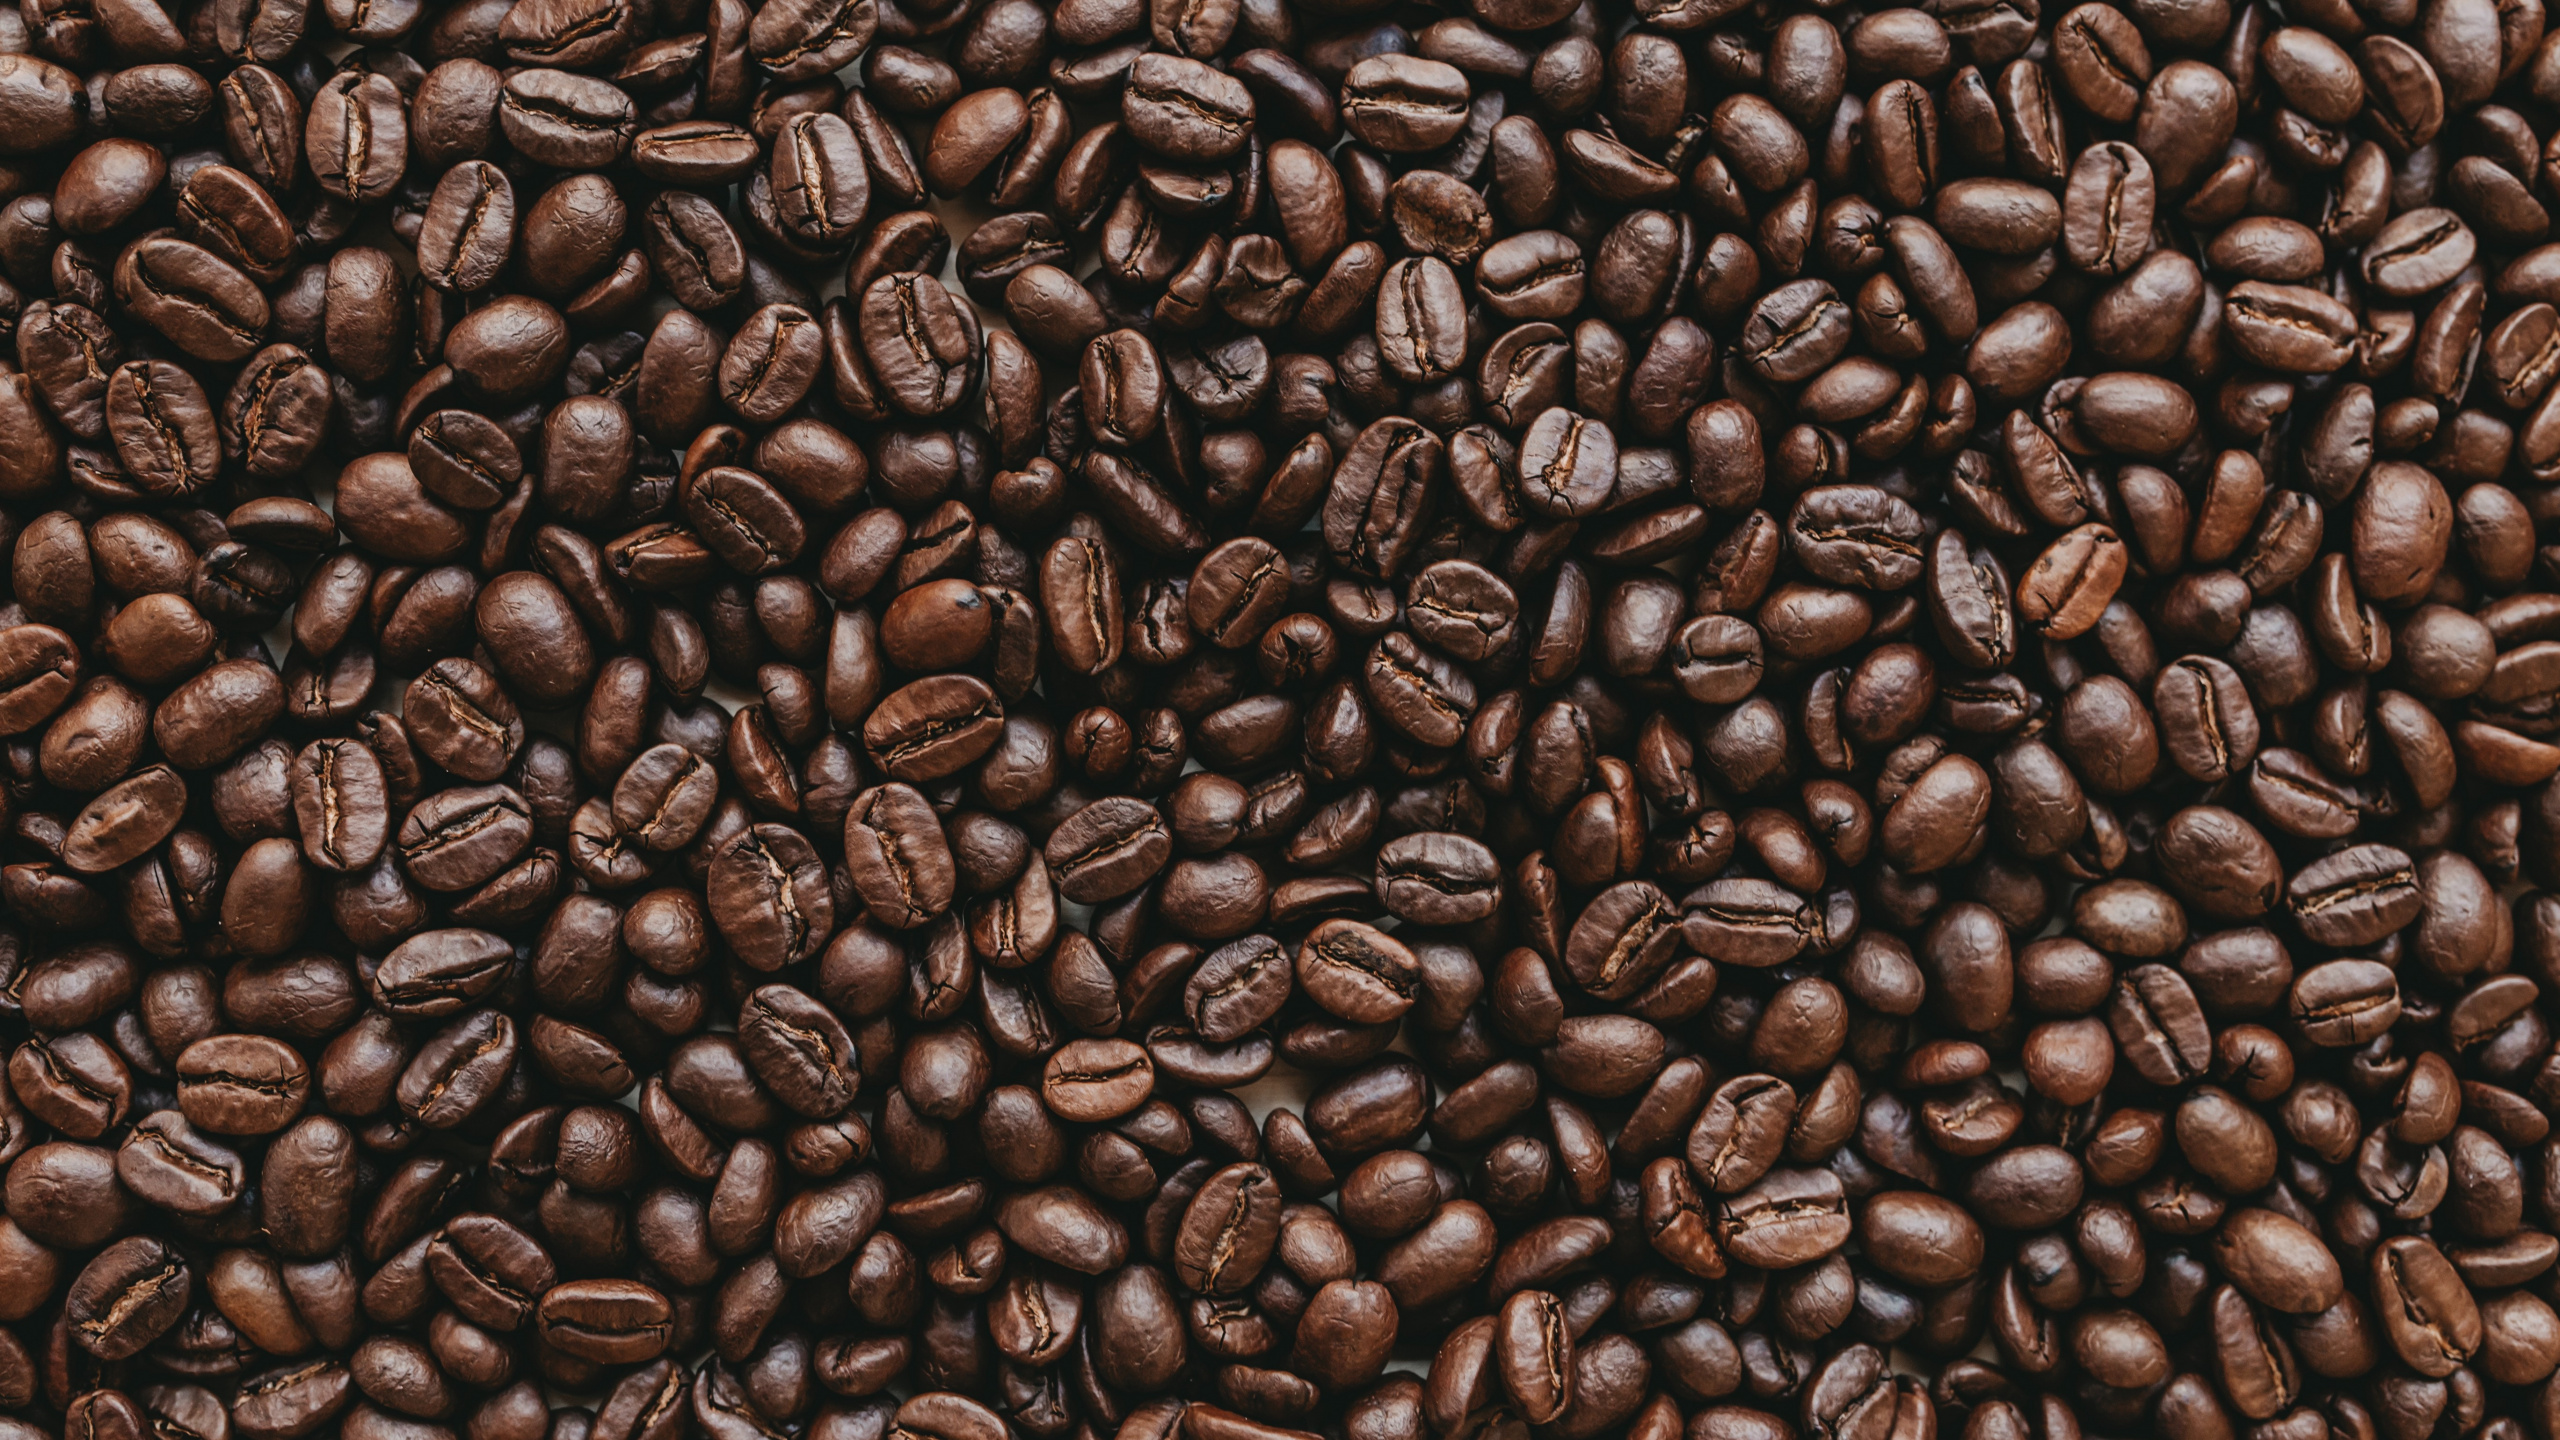 咖啡因, 棕色, 单一来源咖啡, 牙买加蓝山咖啡, Java咖啡 壁纸 2560x1440 允许